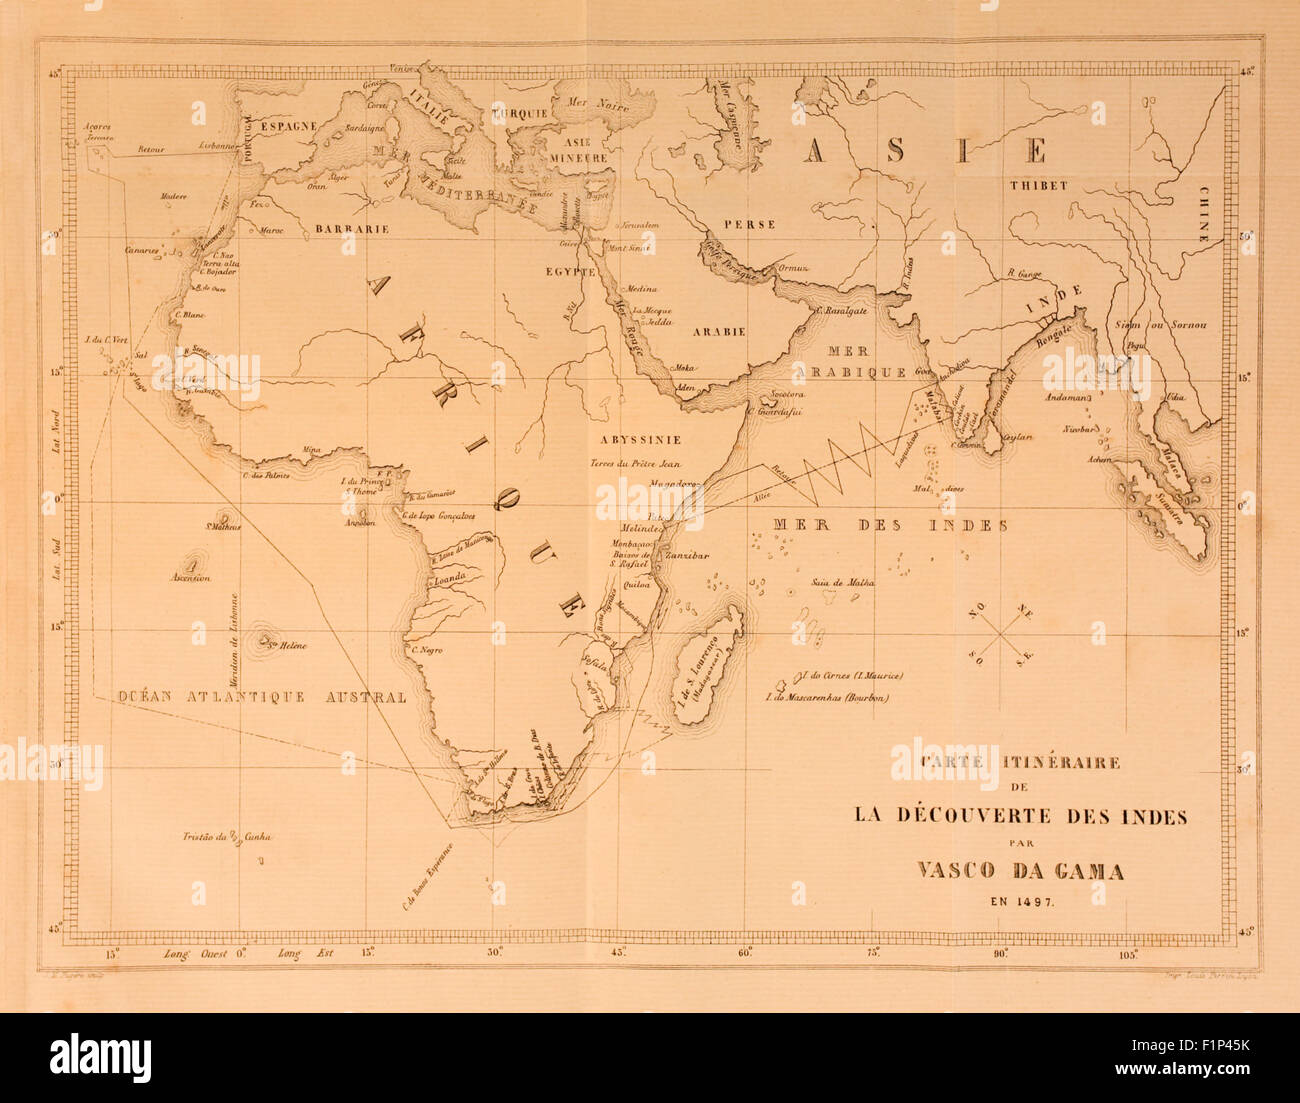 Carte montrant l'itinéraire de l'Europe à l'Inde pris par Vasco de Gama (1460-1524), explorateur portugais et le premier Européen à naviguer avec succès la route de l'Europe le Cap de Bonne Espérance à l'Inde, de l'atterrissage le 20 mai 1498. Voir la description pour plus d'informations. Banque D'Images